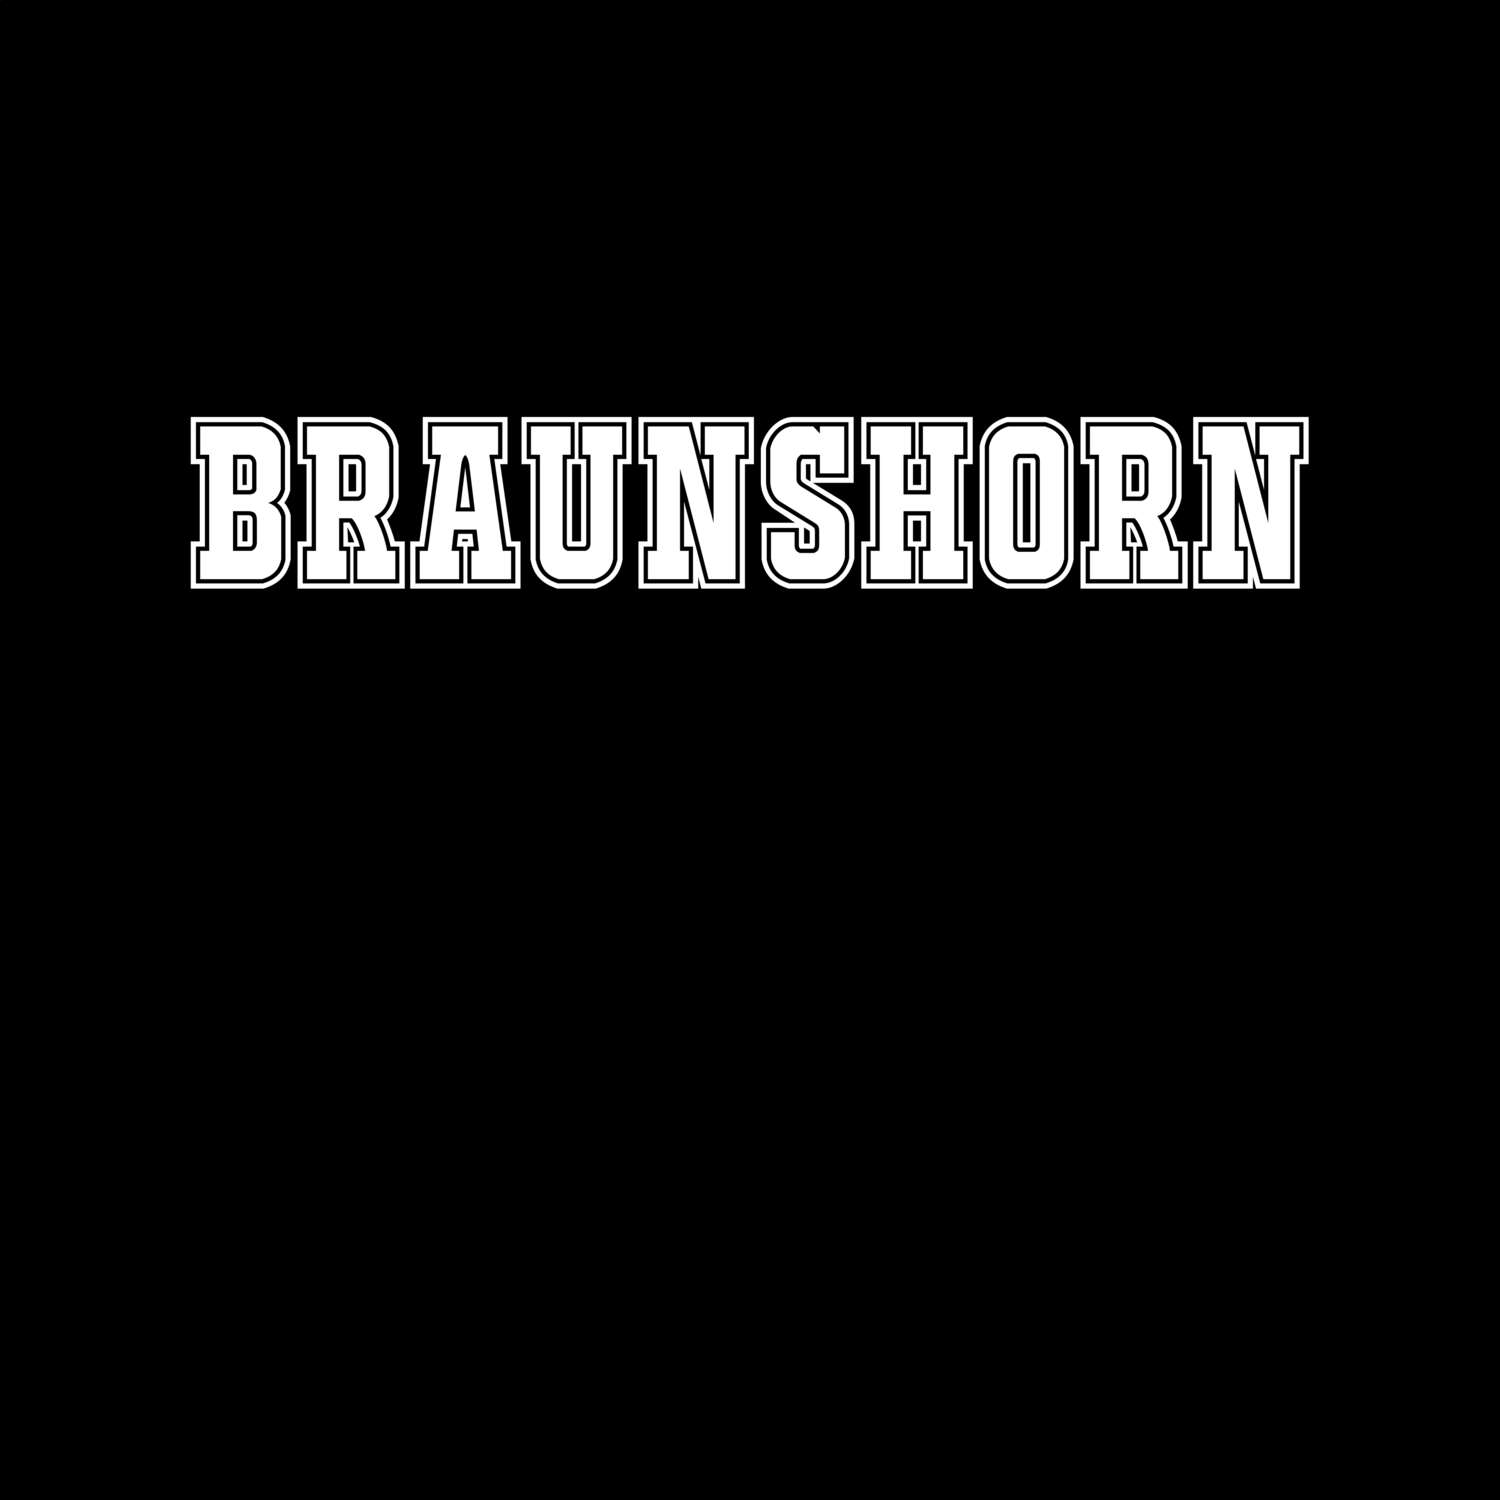 Braunshorn T-Shirt »Classic«